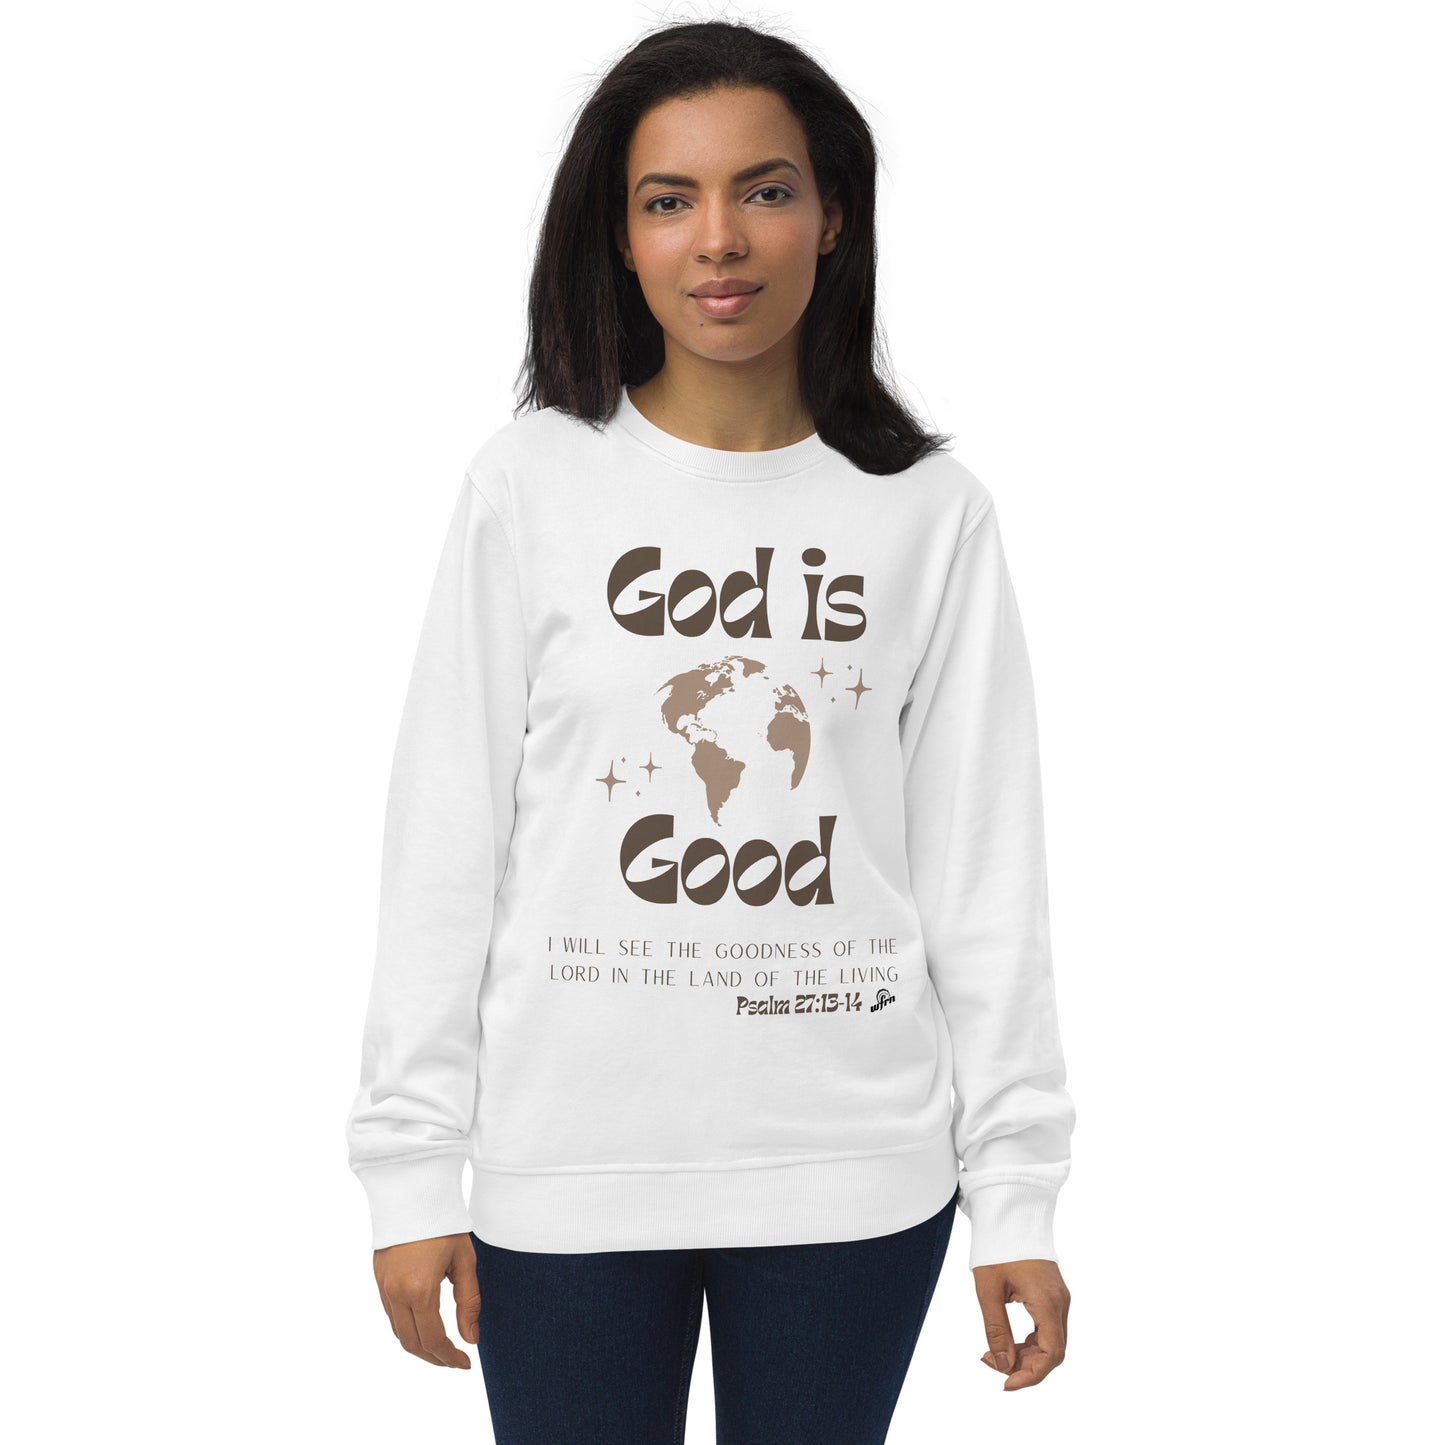 'God is Good' Unisex organic sweatshirt